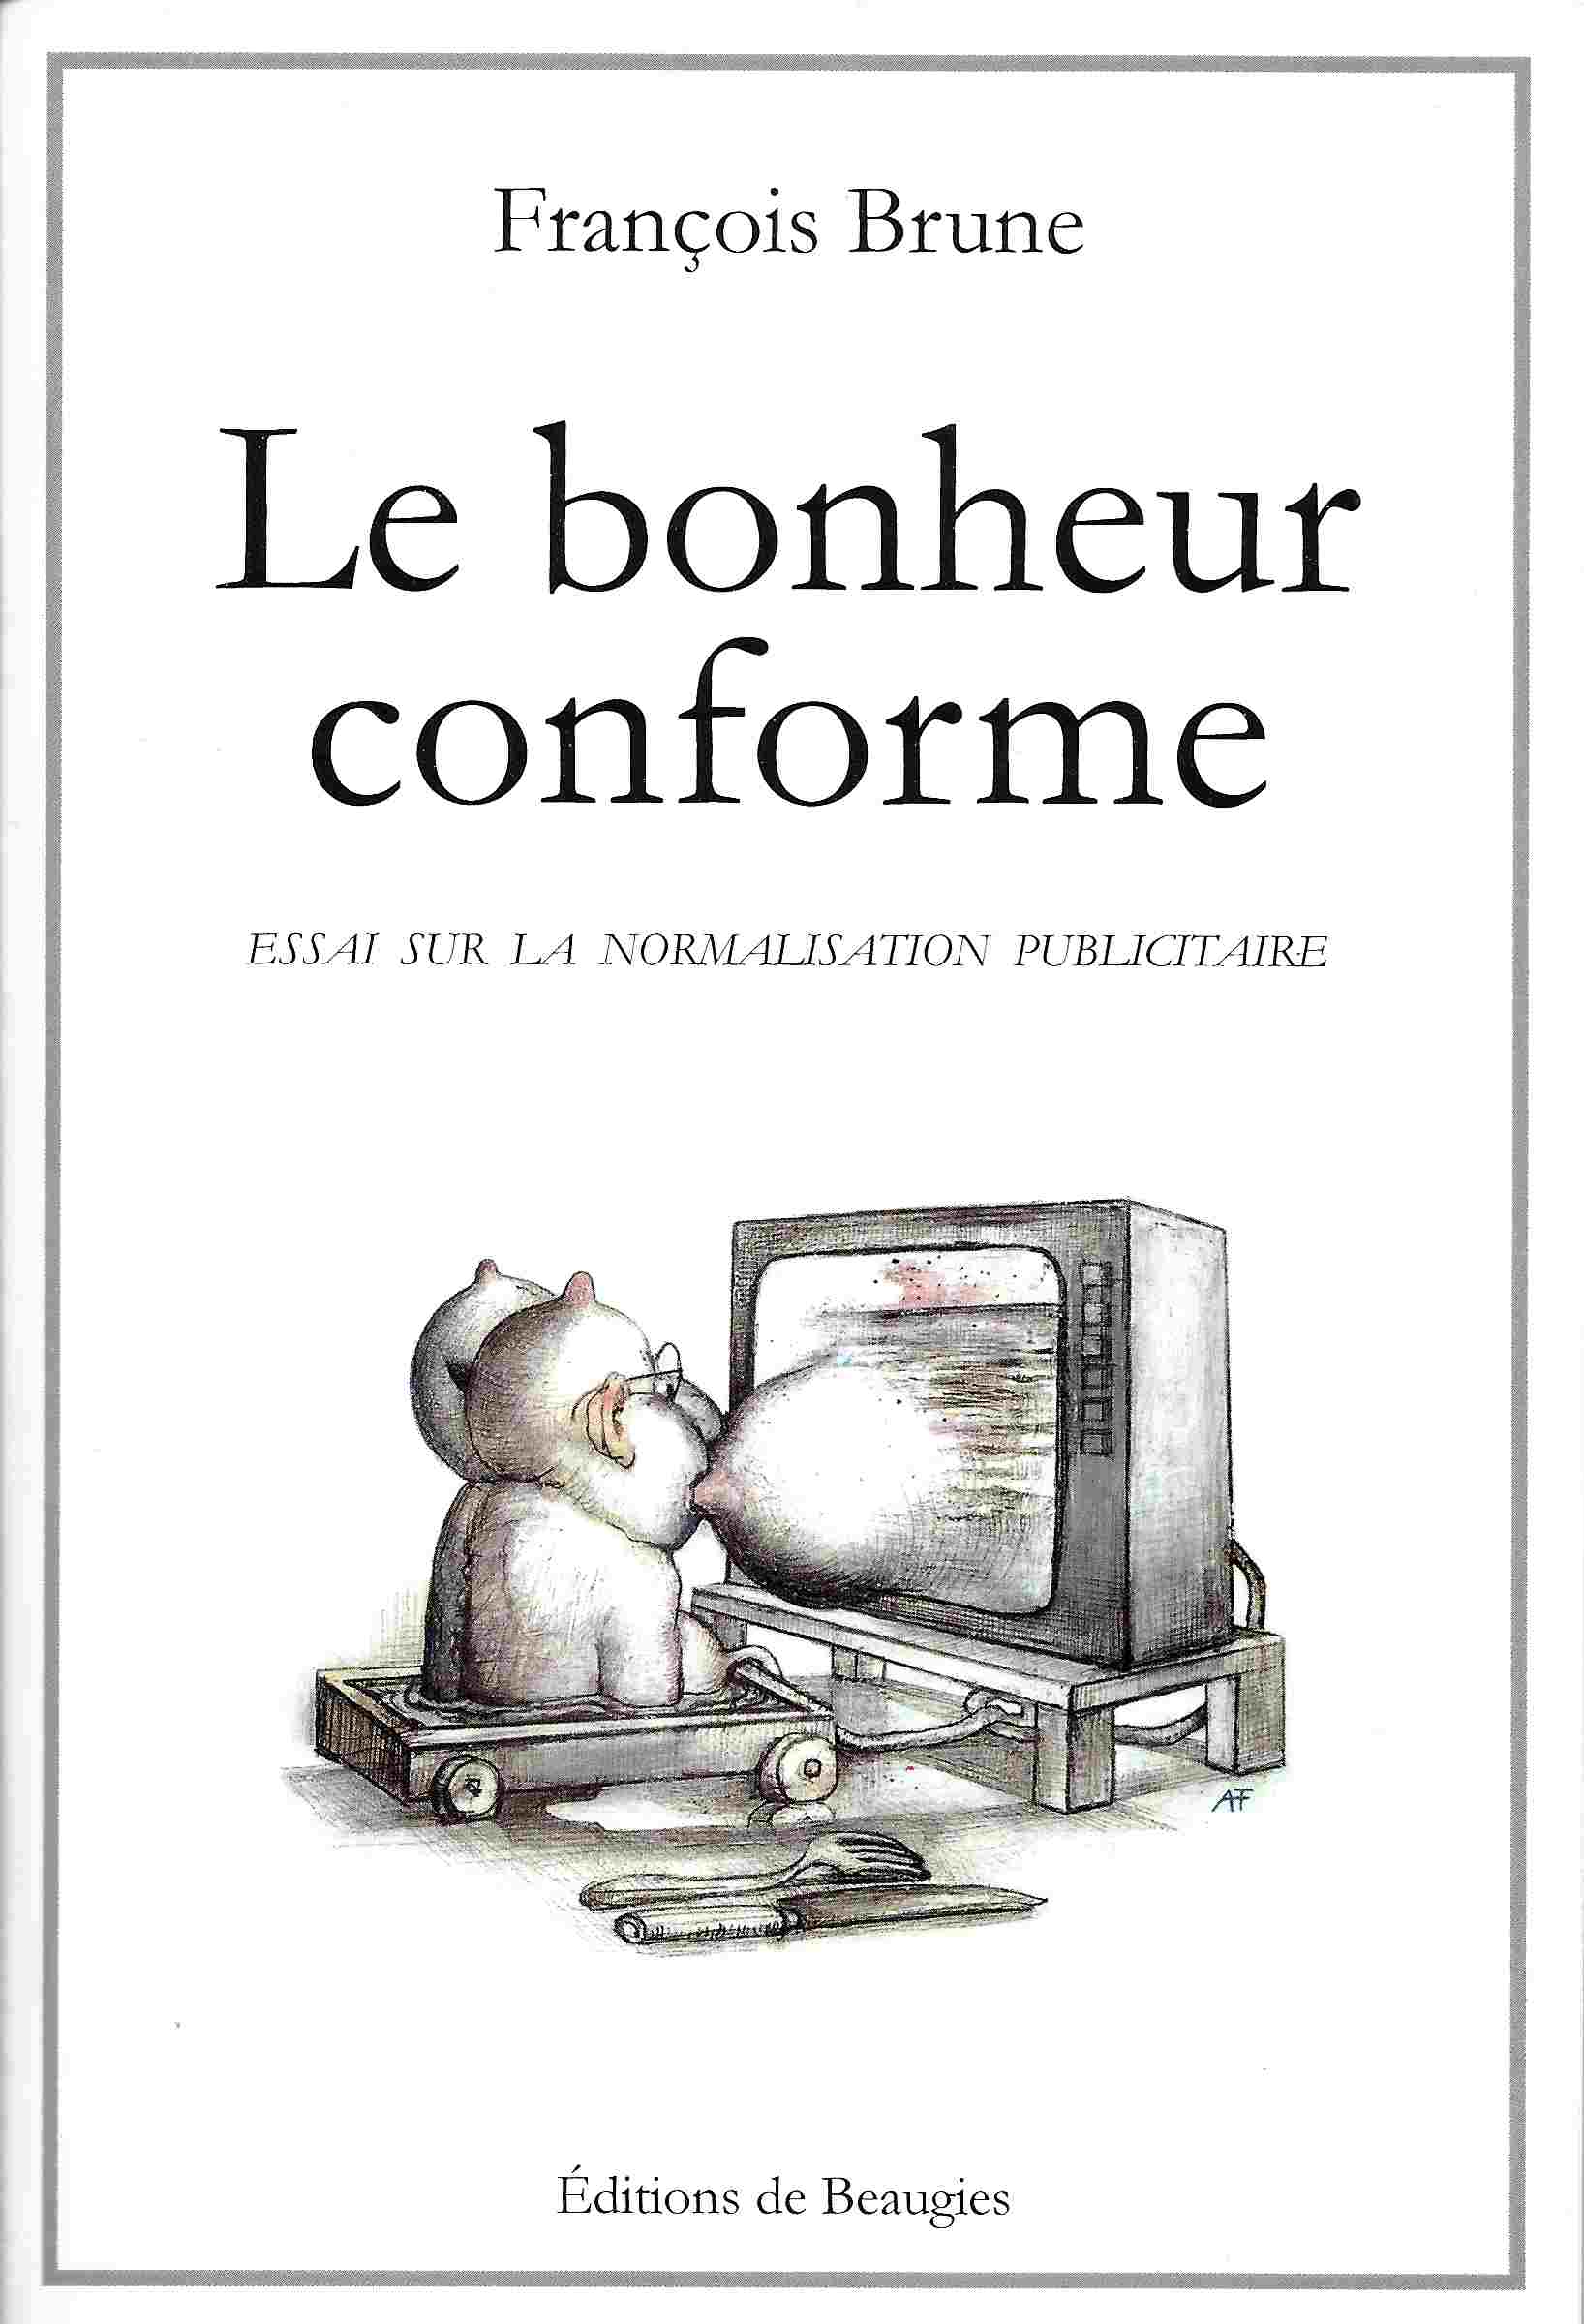 Le Bonheur conforme (Éditions de Beaugies, 2012)